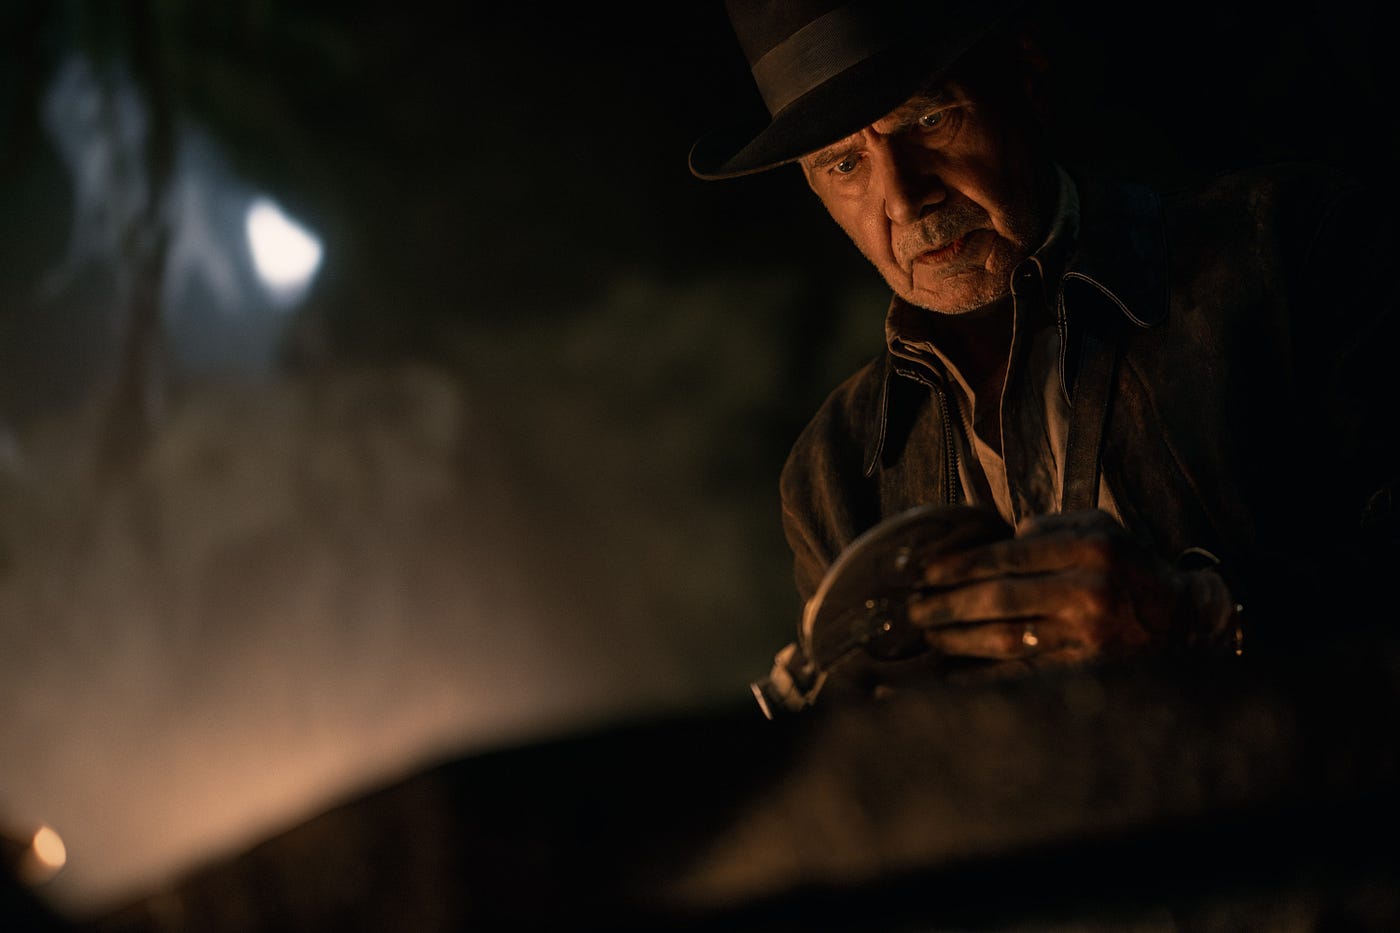 Indiana Jones e a Relíquia do Destino: elenco, trailer, história e